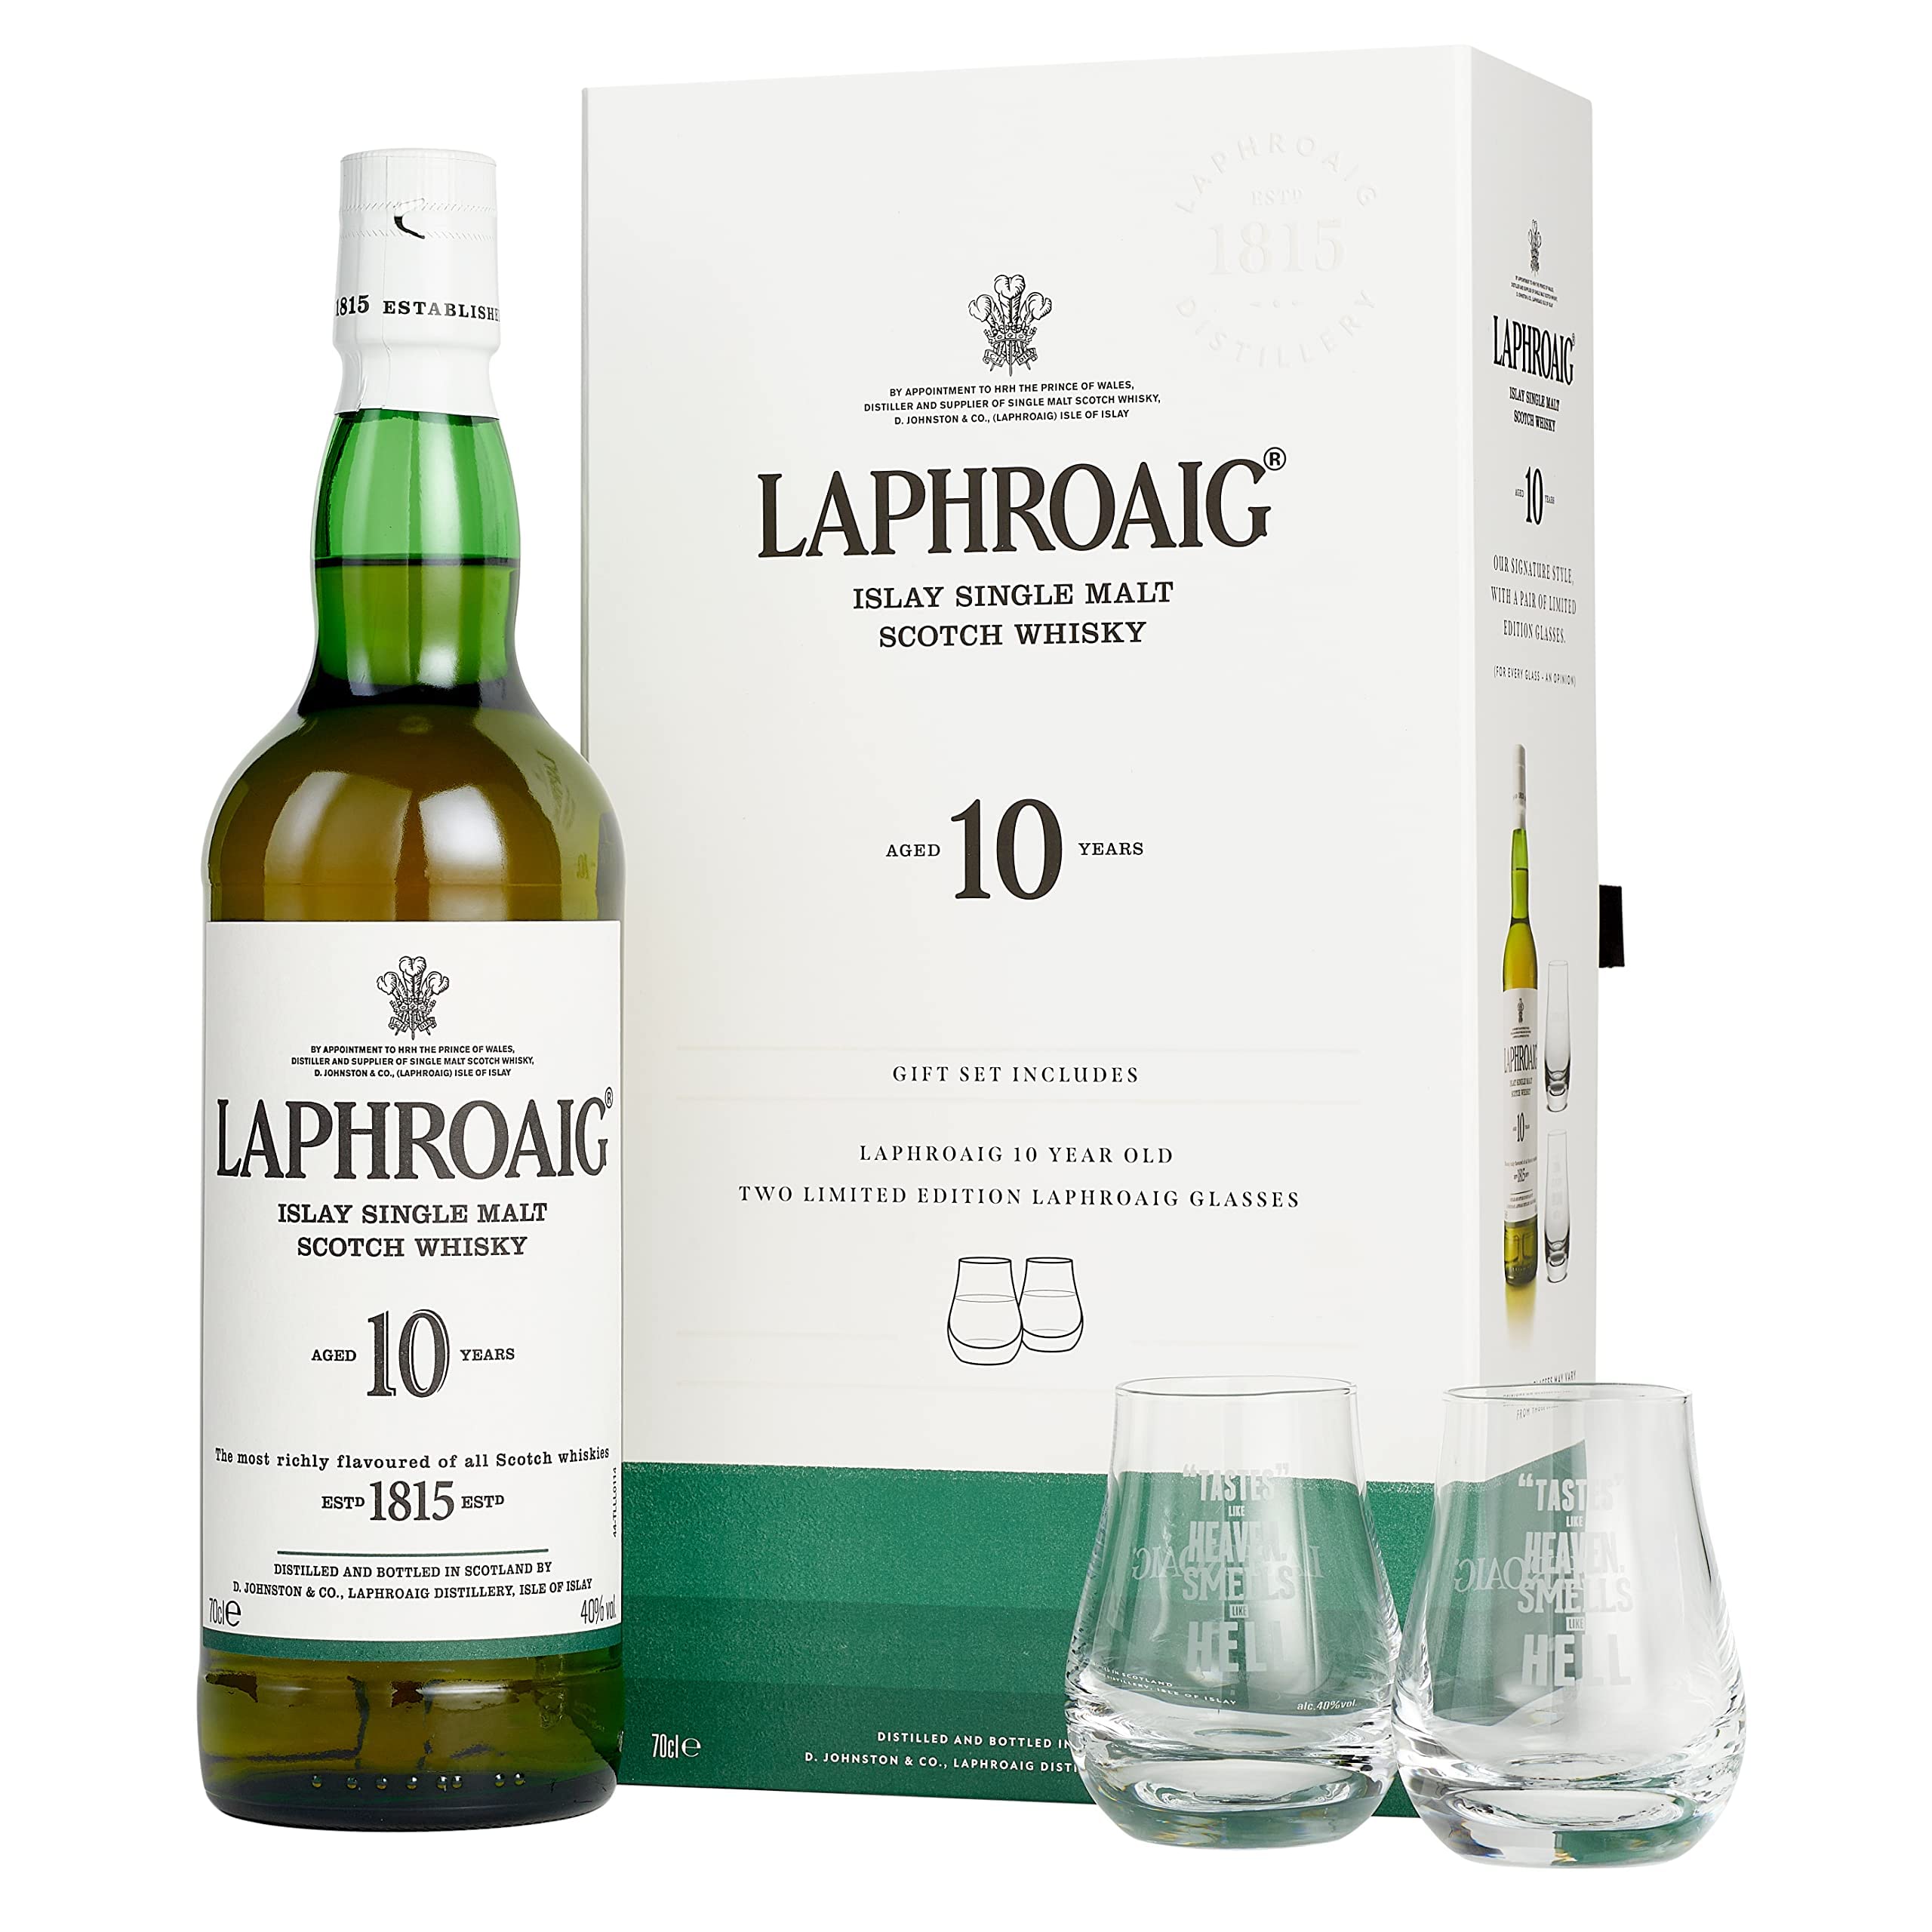 Laphroaig 10 Jahre + 2 Gläser | Islay Single Malt Scotch Whisky | mit Geschenkverpackung | einzigartig rauchig-torfiger Geschmack | 40% Vol | 700ml Einzelflasche + 2 Gläser